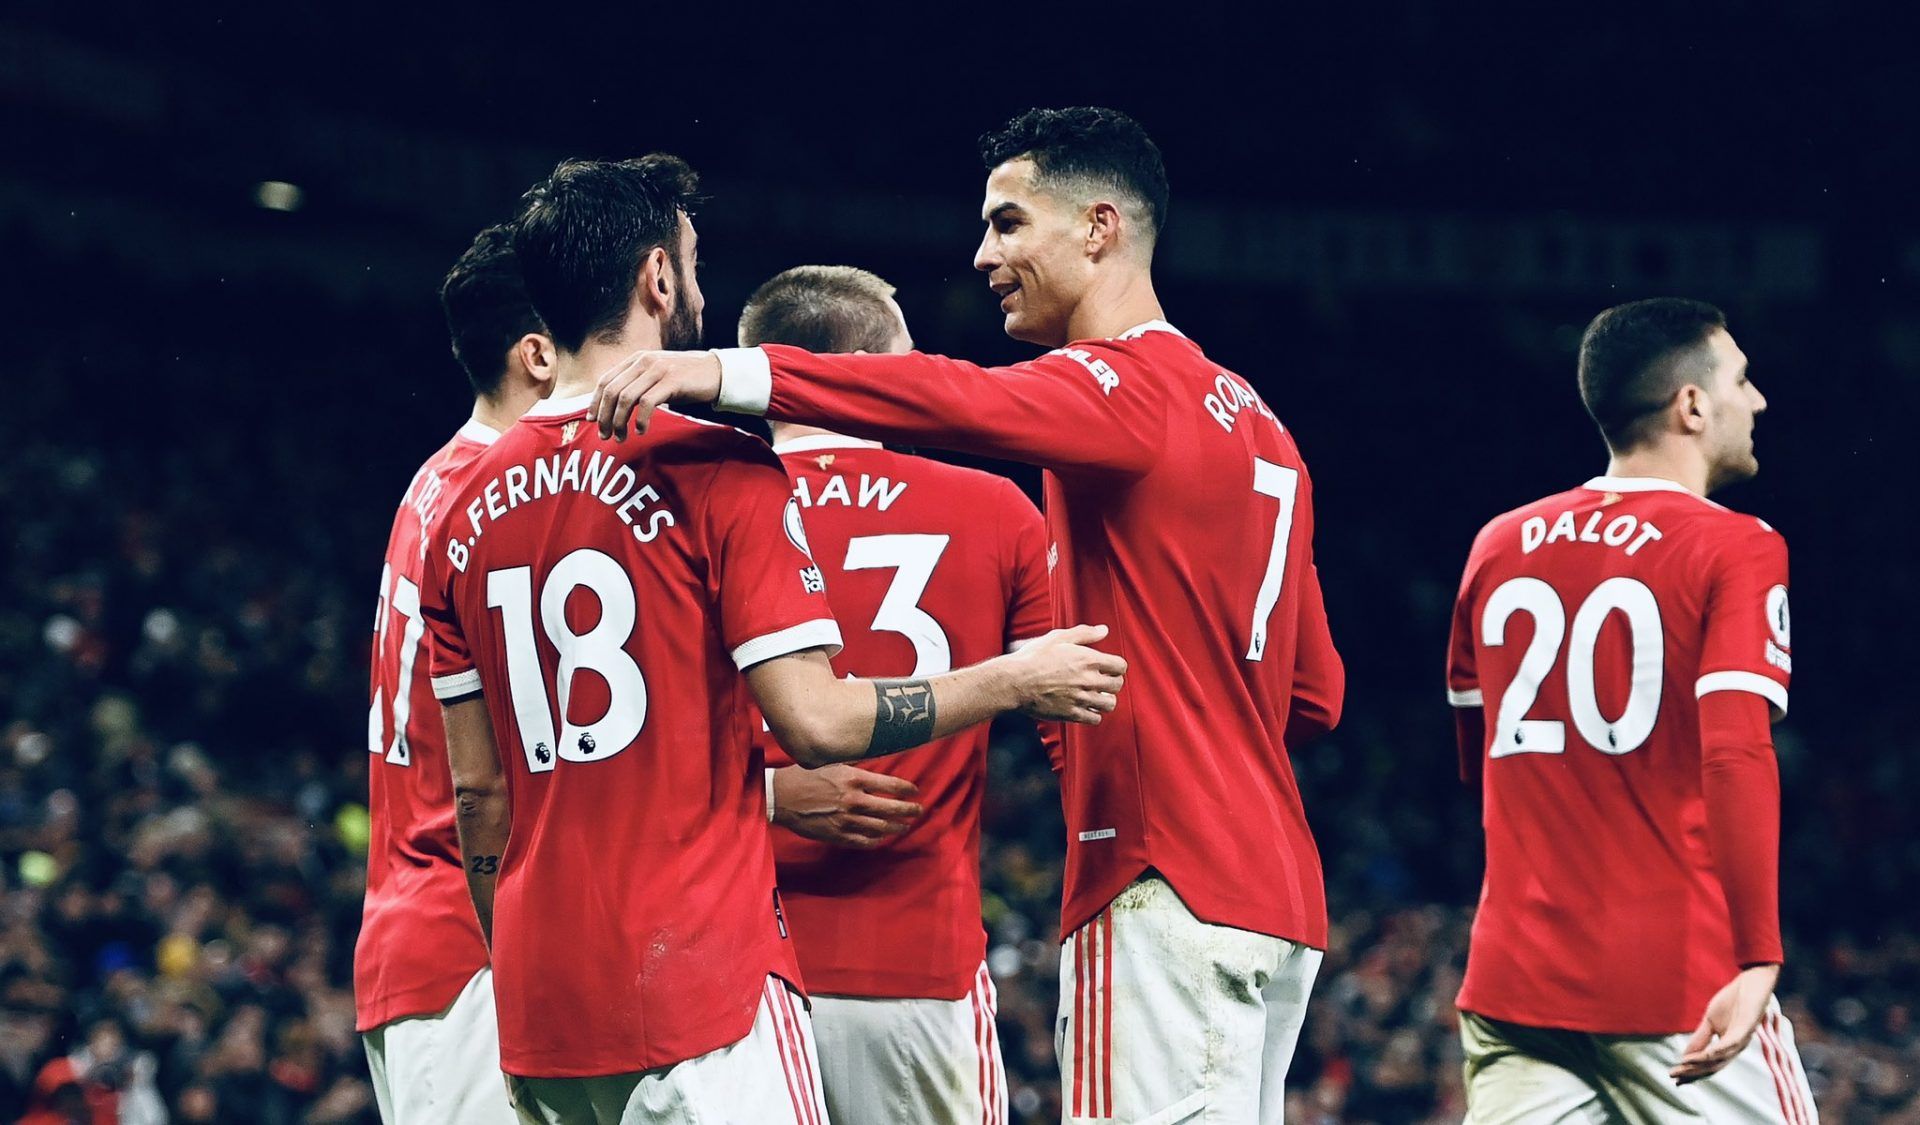 Vídeo: Manchester United consigue triunfar en duelo pendiente de Premier